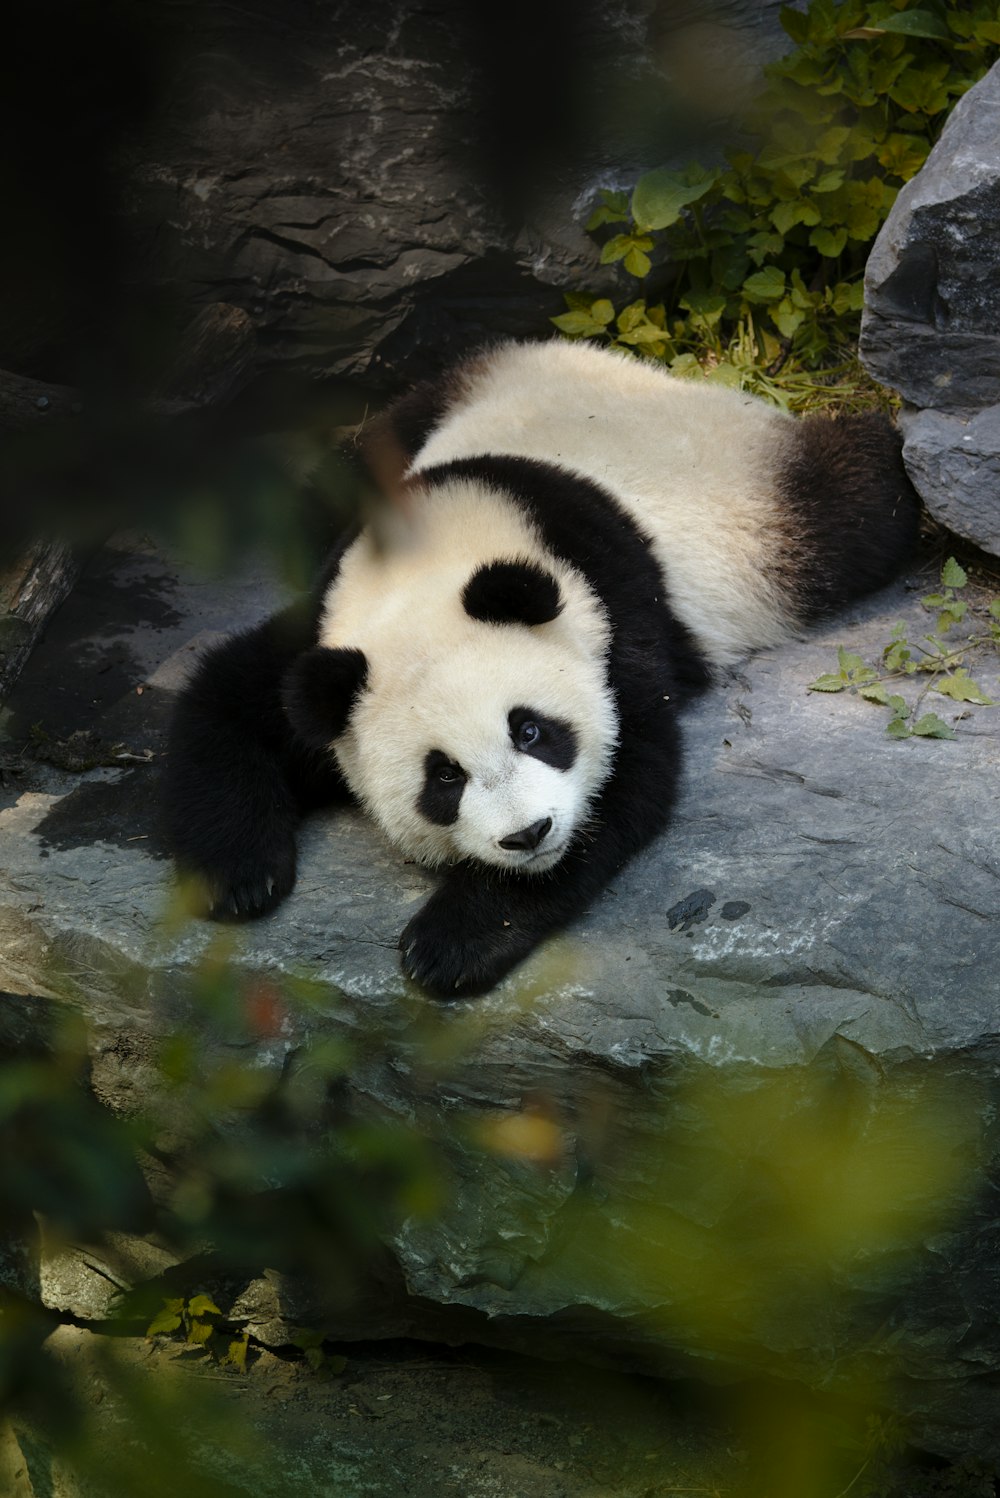 panda on water during daytime